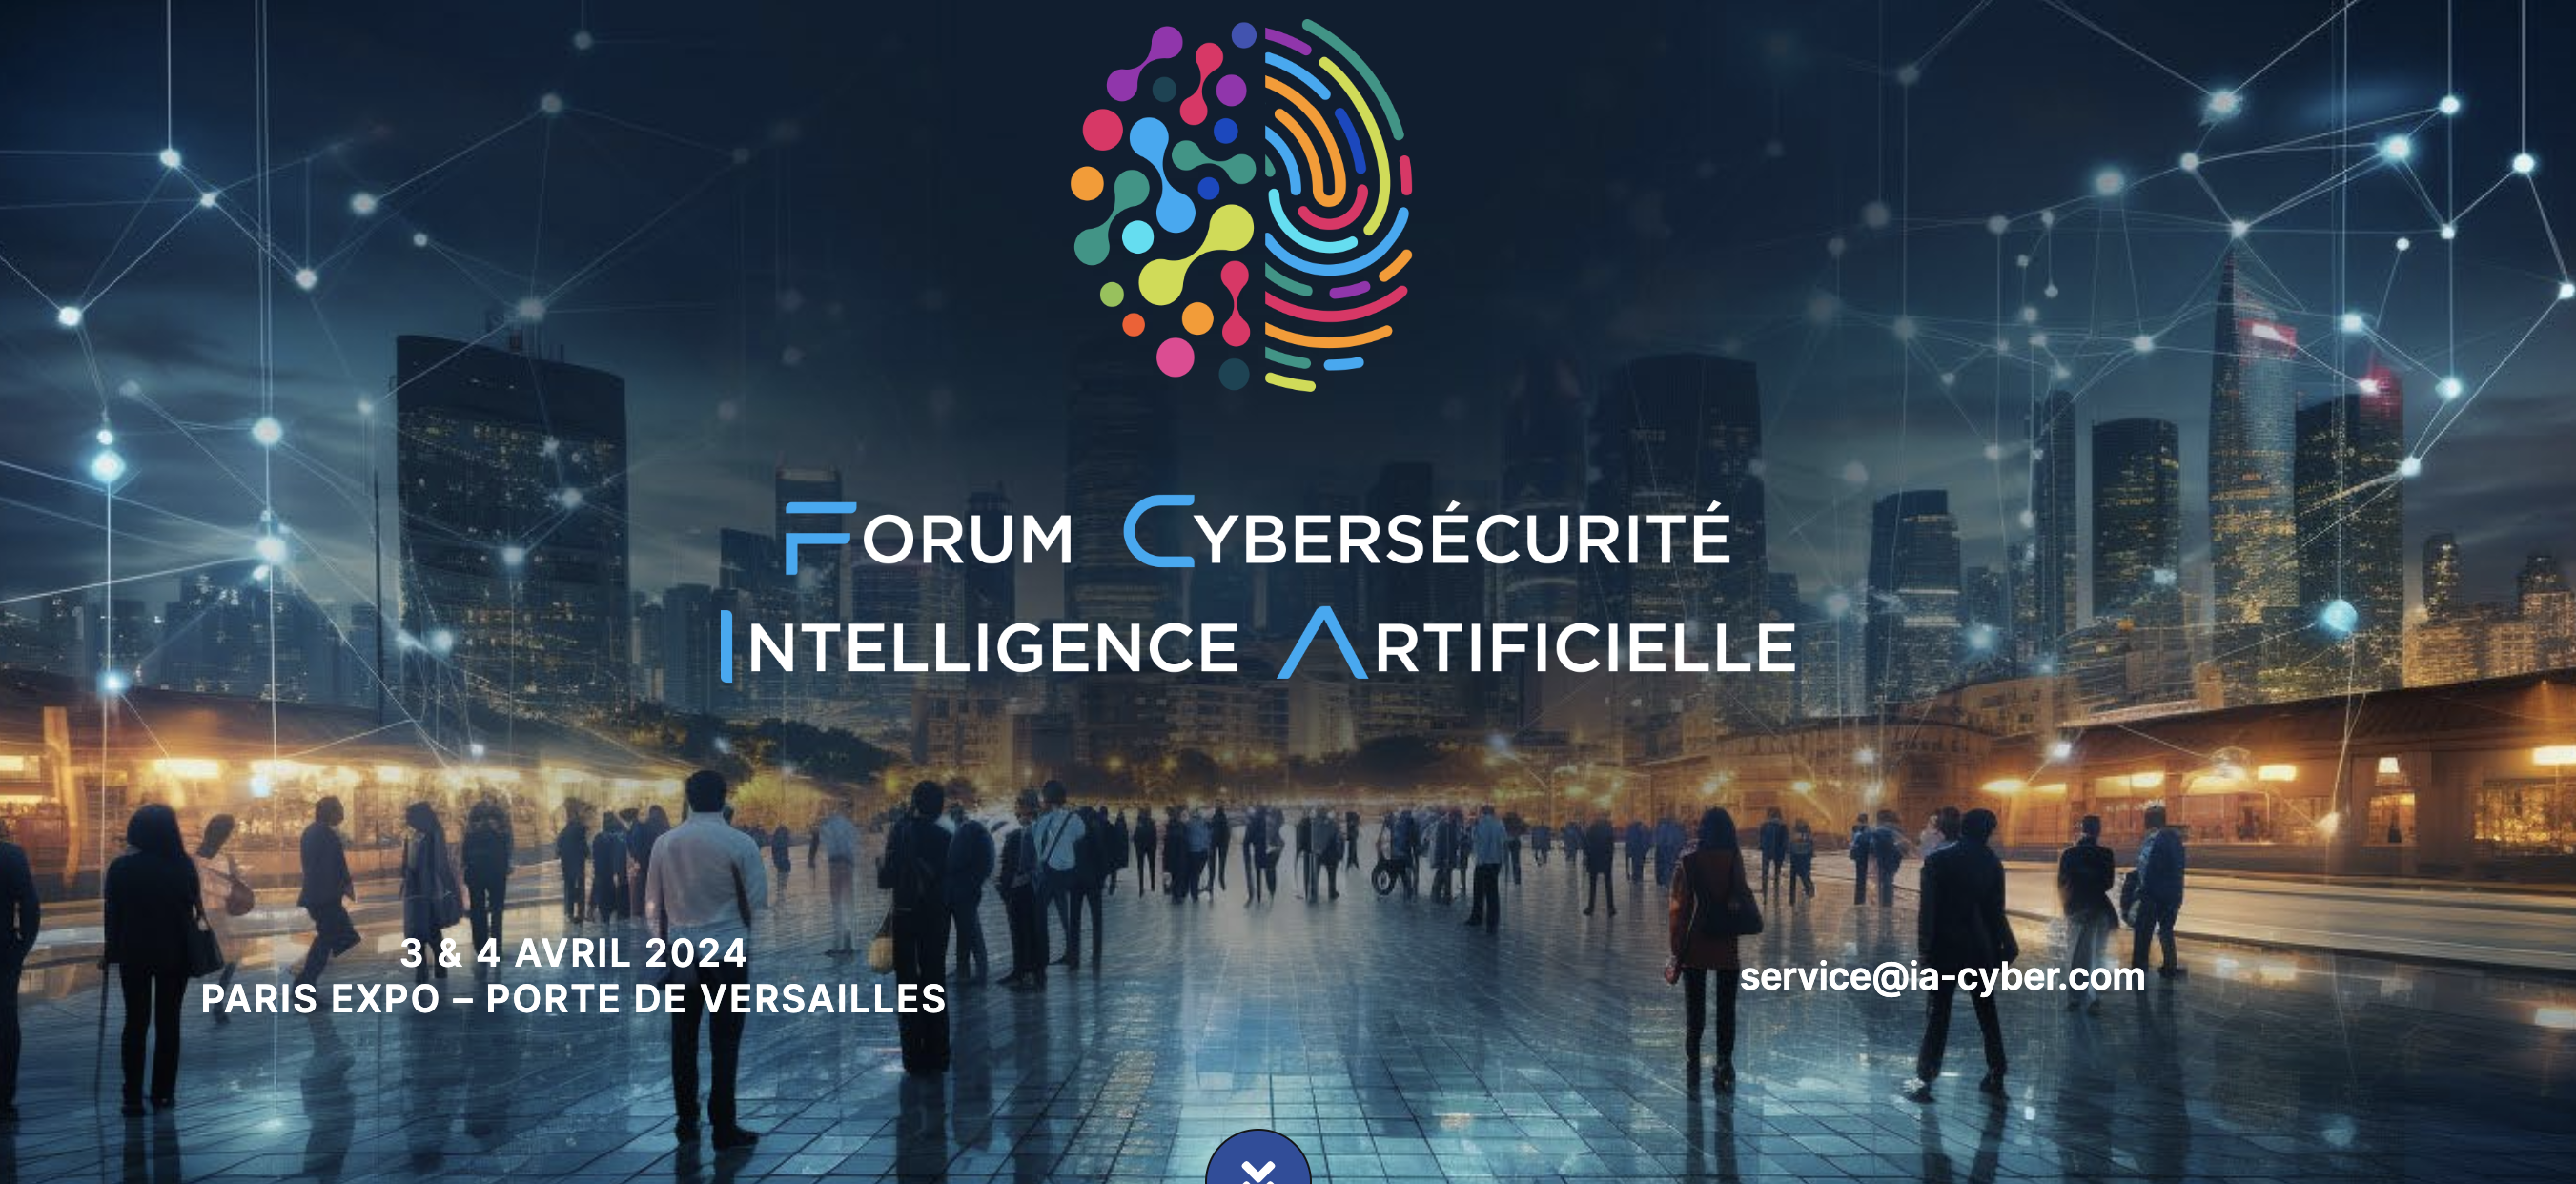 Le 3 & 4 avril 2024, Paris Expo-Porte de Versailles : Forum Cybersécurité-Intelligence Artificielle !